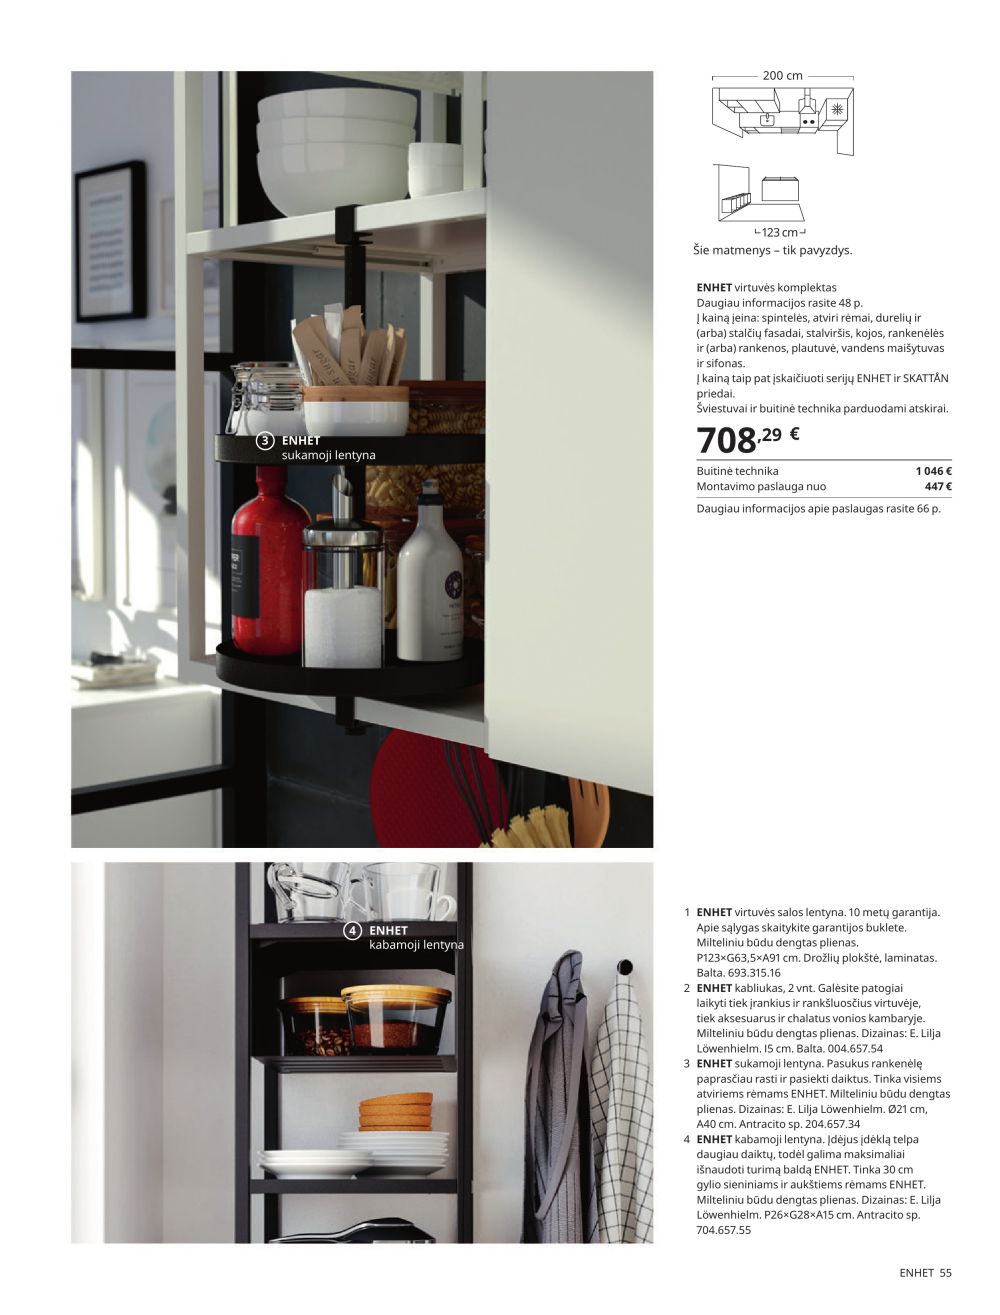 ikea - IKEA - Virtuvė 2023 - page: 55